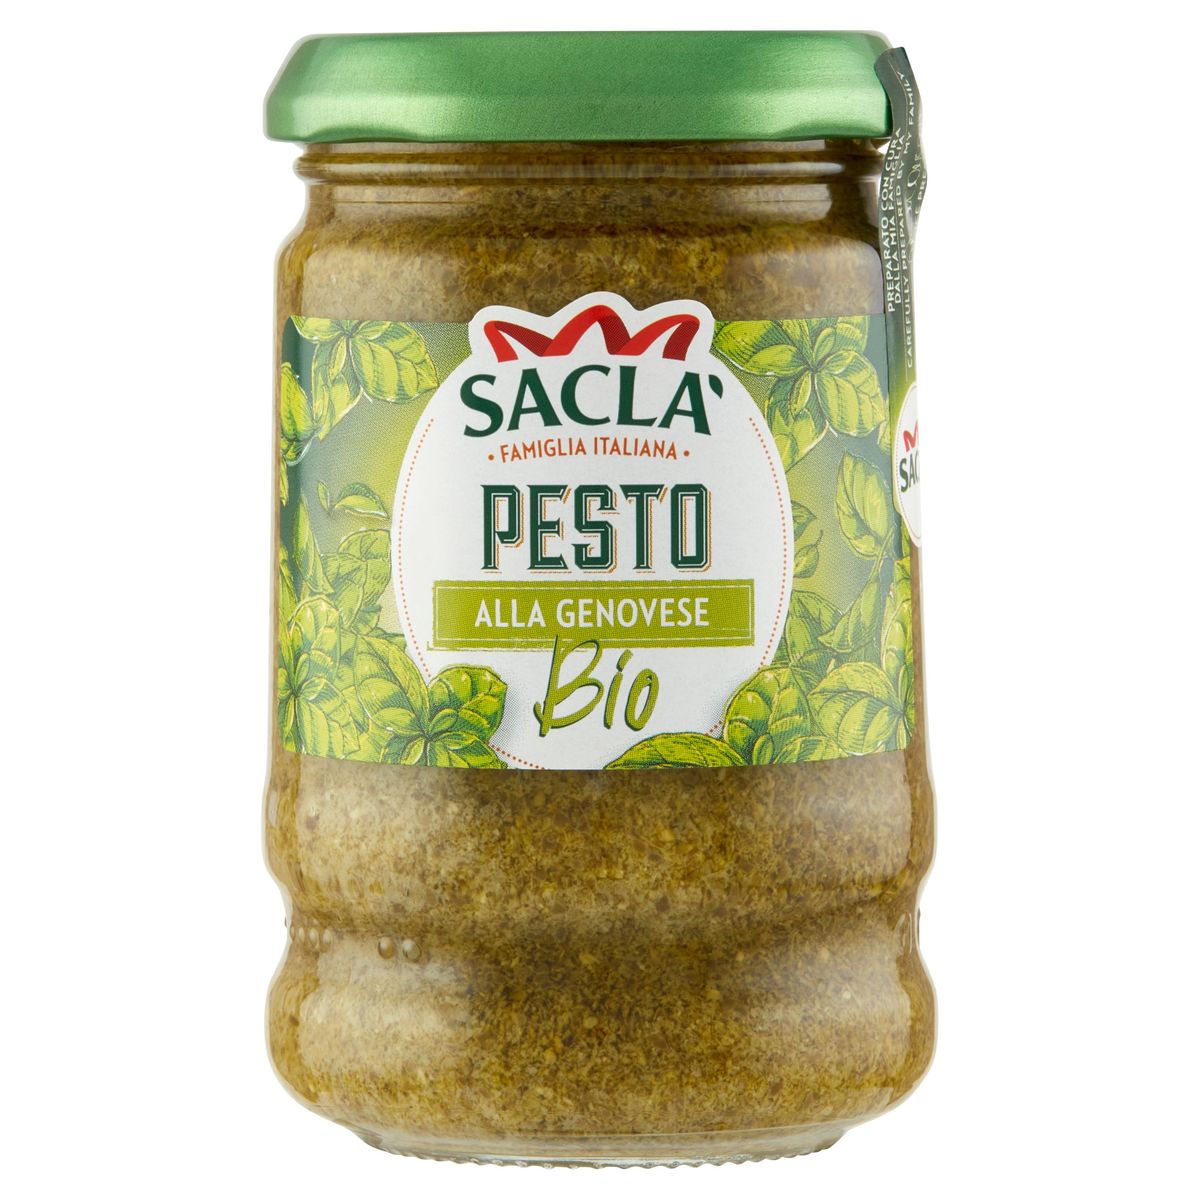 Sacla Pesto alla Genovese Bio 190 g